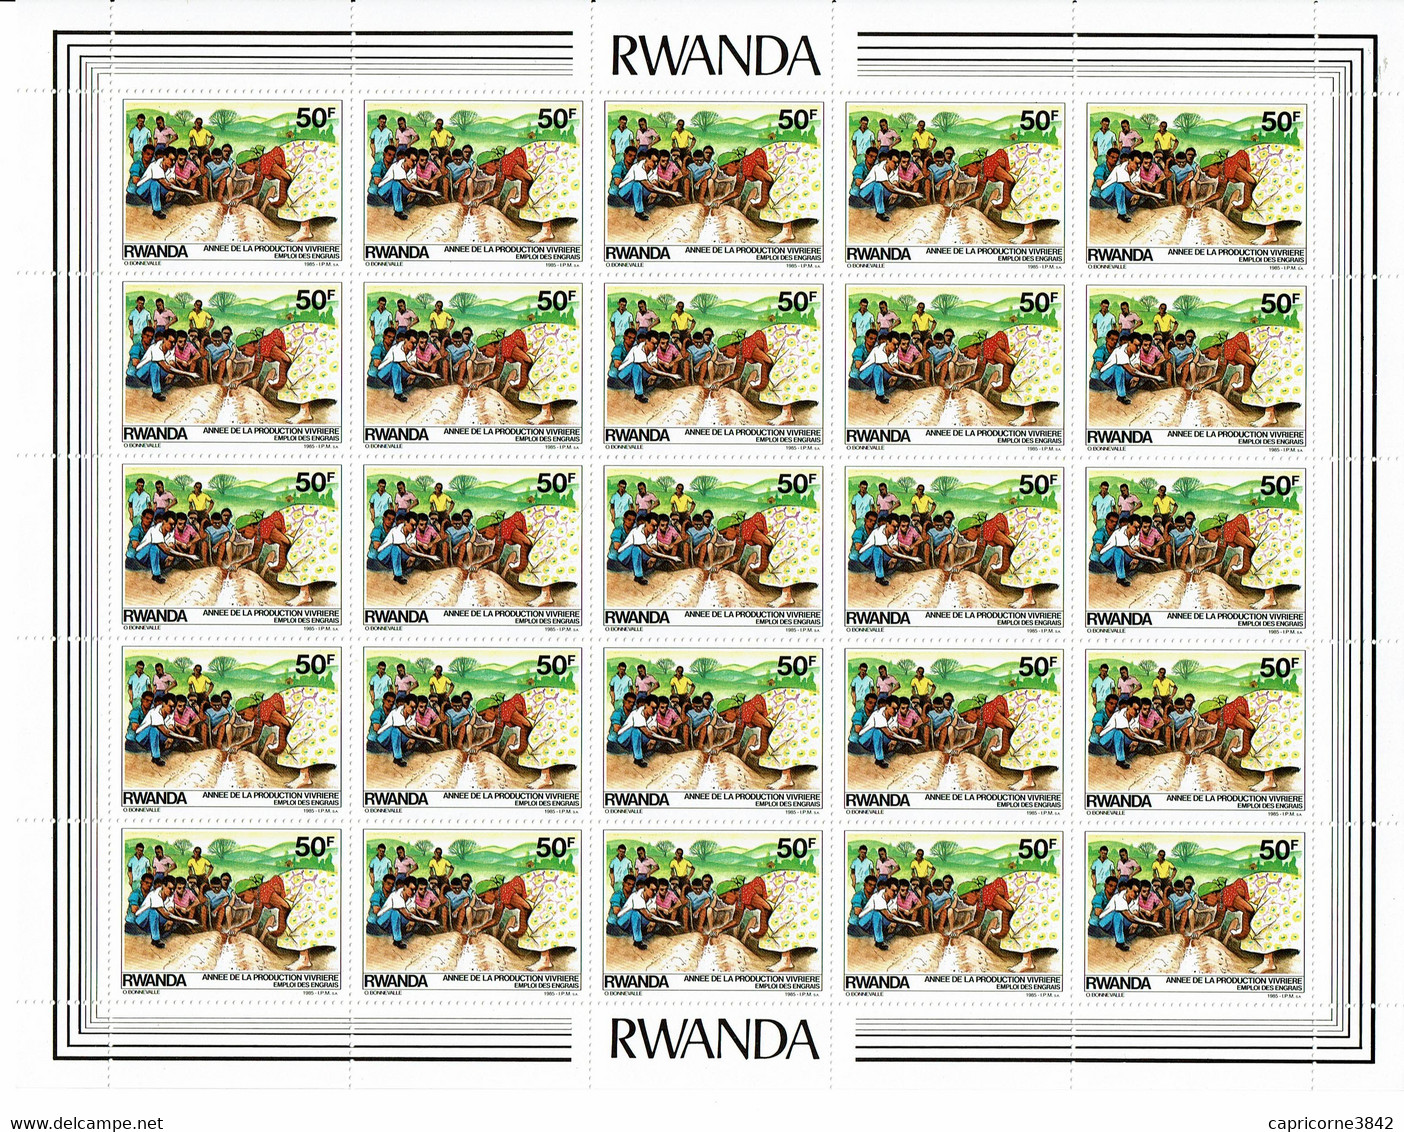 1985 - Rwanda - ANNEE DE LA PRODUCTION VIVRIERE - EMPLOI DES ENGRAIS - Feuille Entière De 25 Tp N° 1170 - Neufs